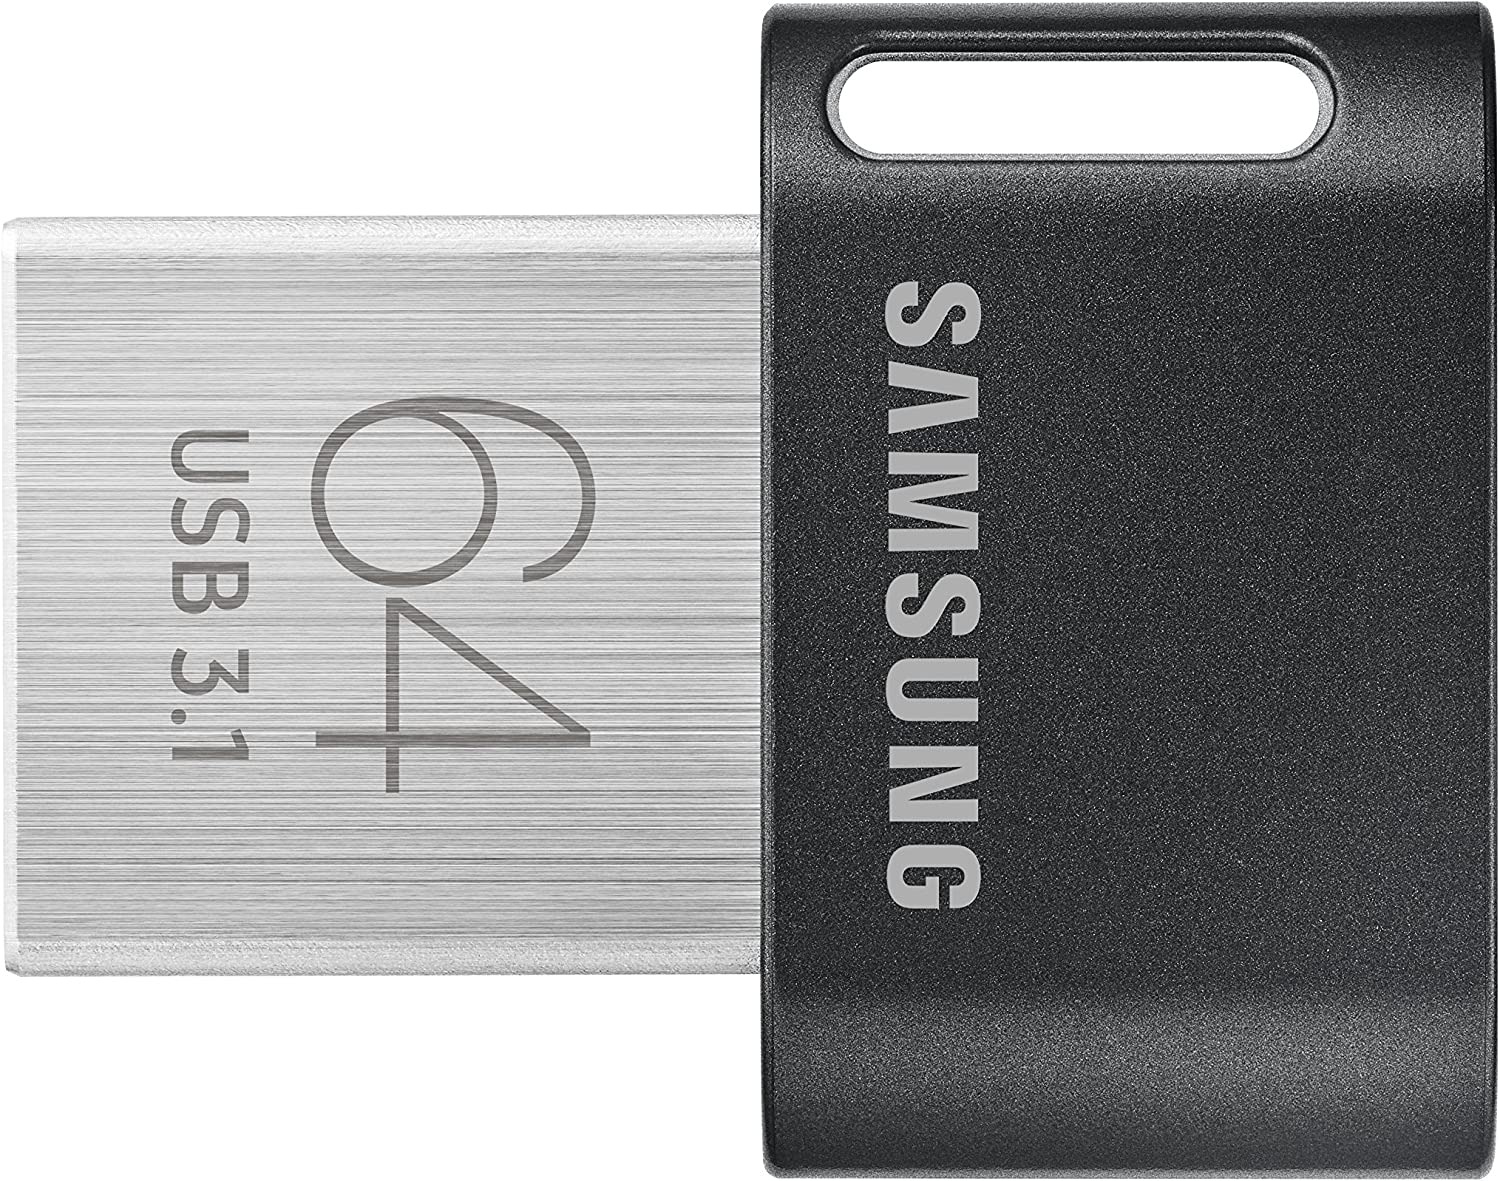 SAMSUNG MUF-64AB/AM FIT plus 64GB - 300Mb/S USB 3.1 Flash Drive Black/Sliver